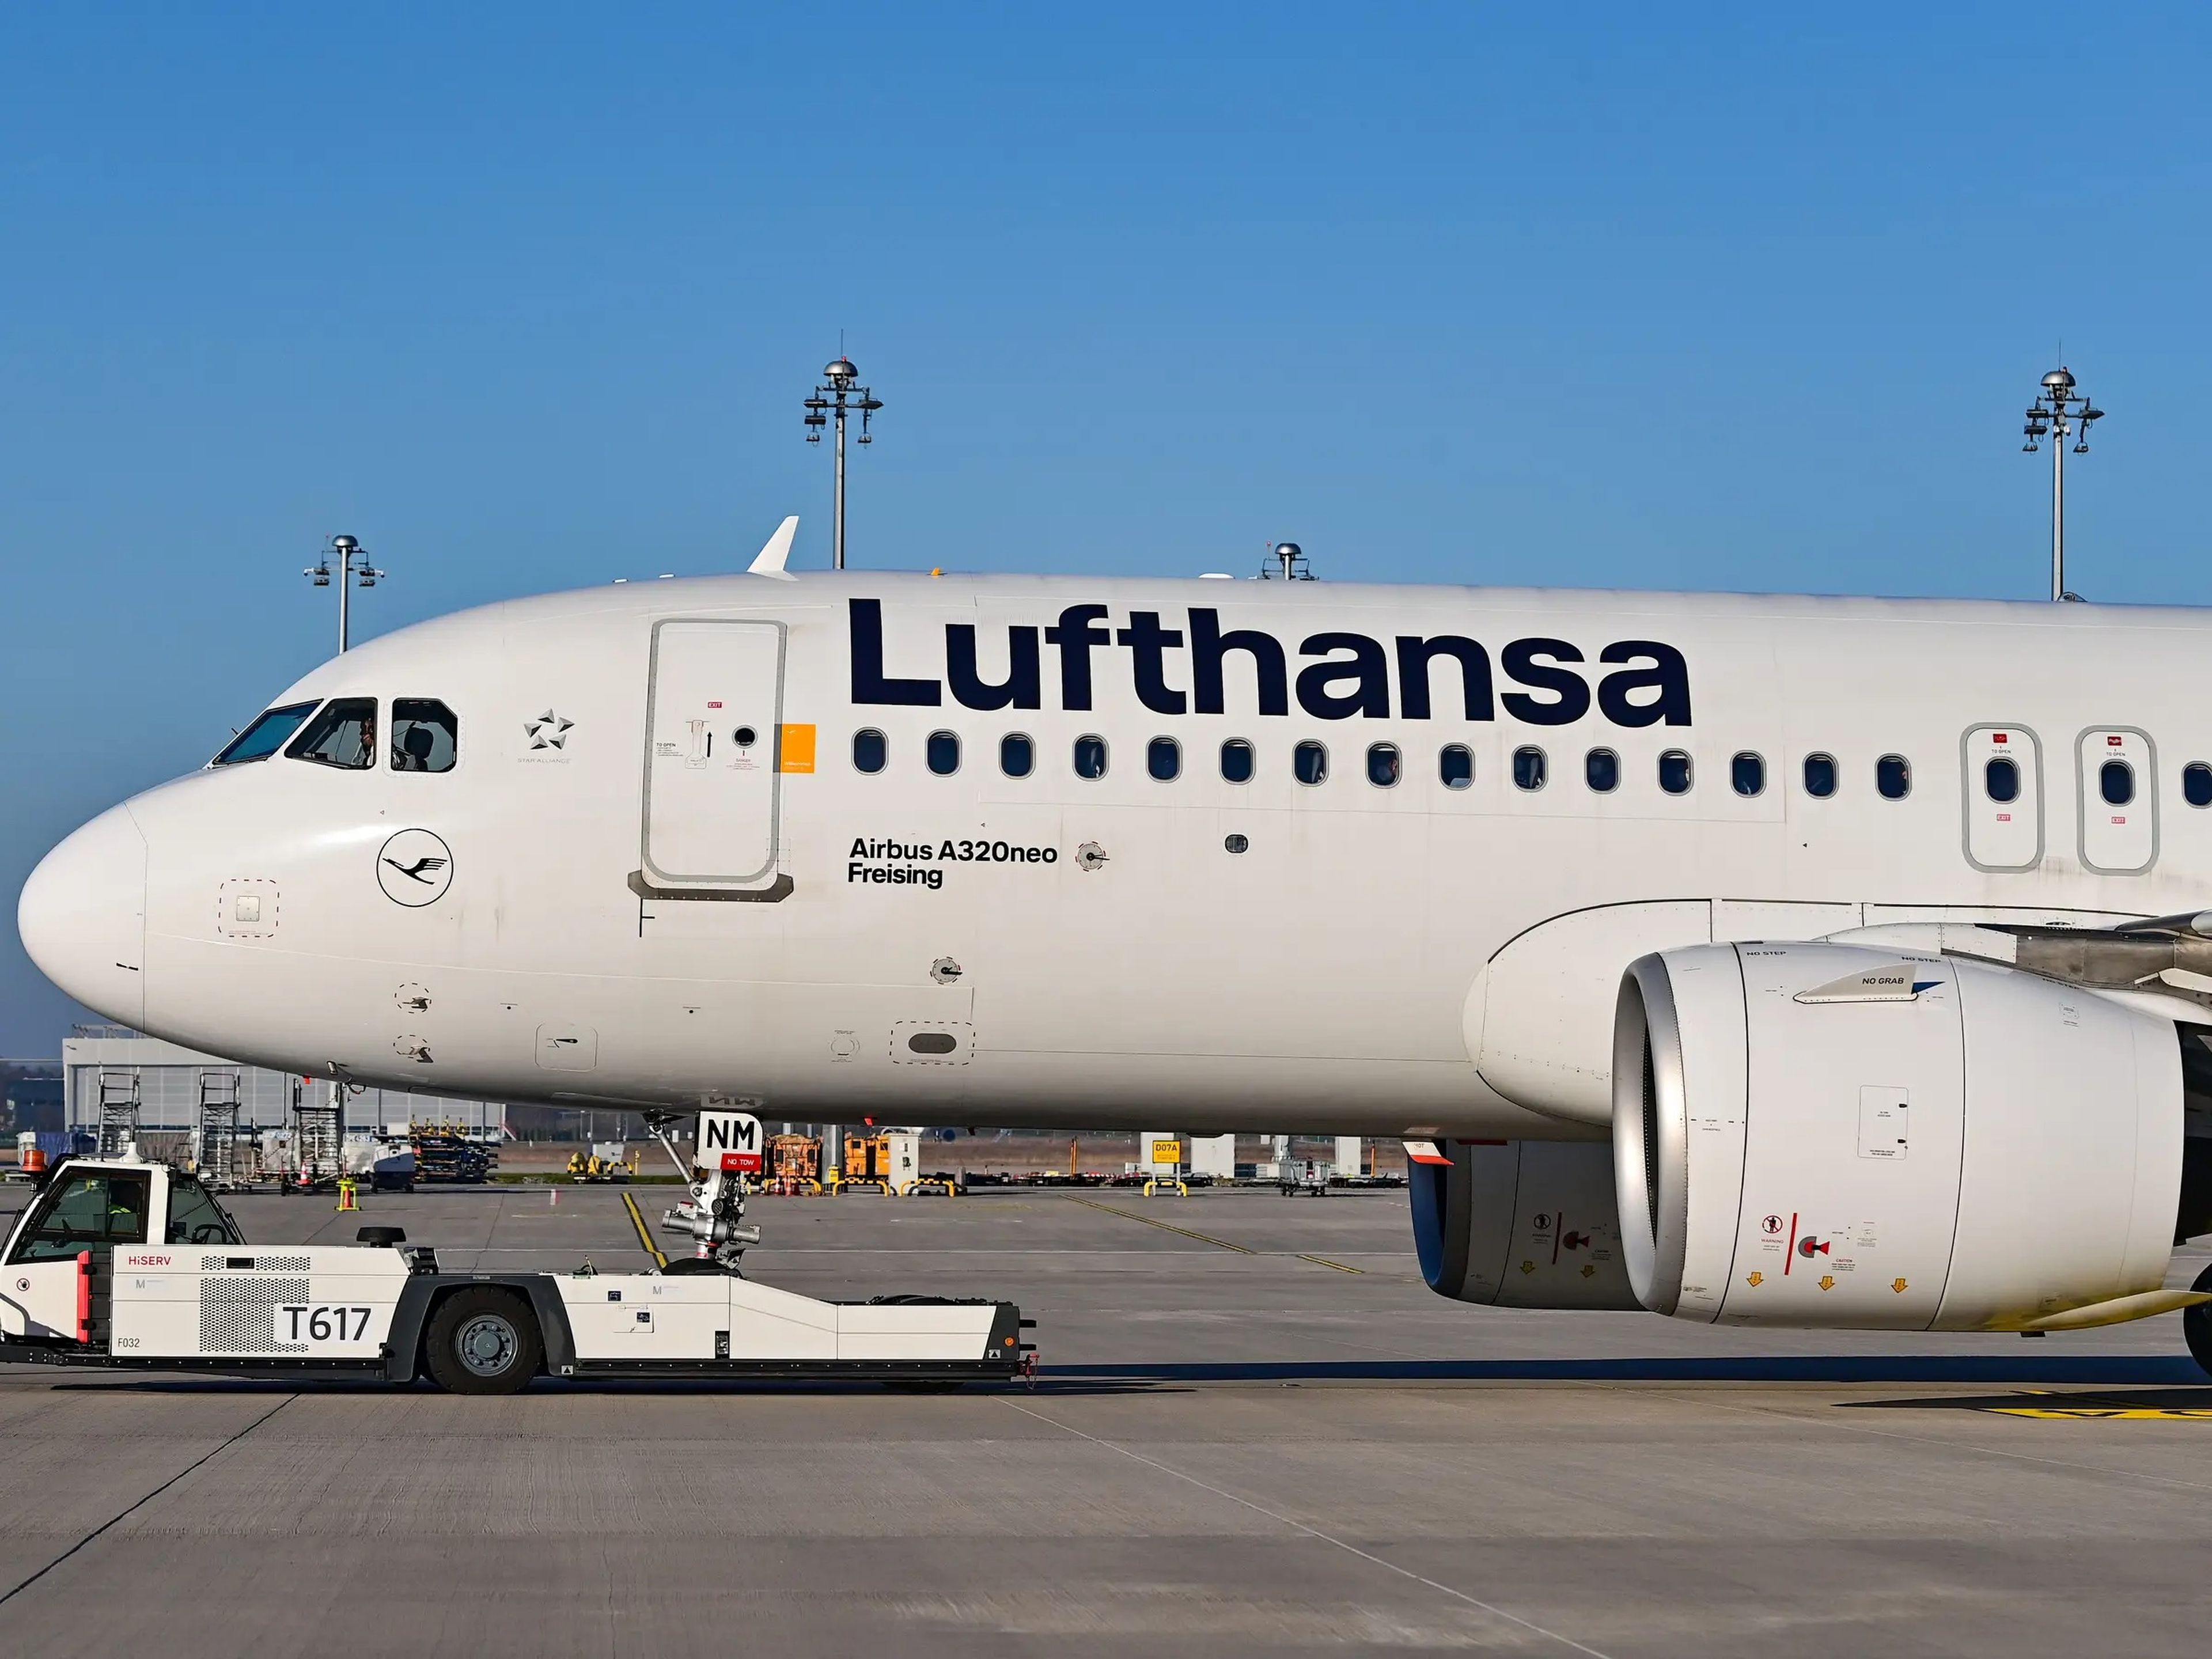 La compañía aérea Lufthansa ha restringido esta semana la venta de billetes de bajo coste.